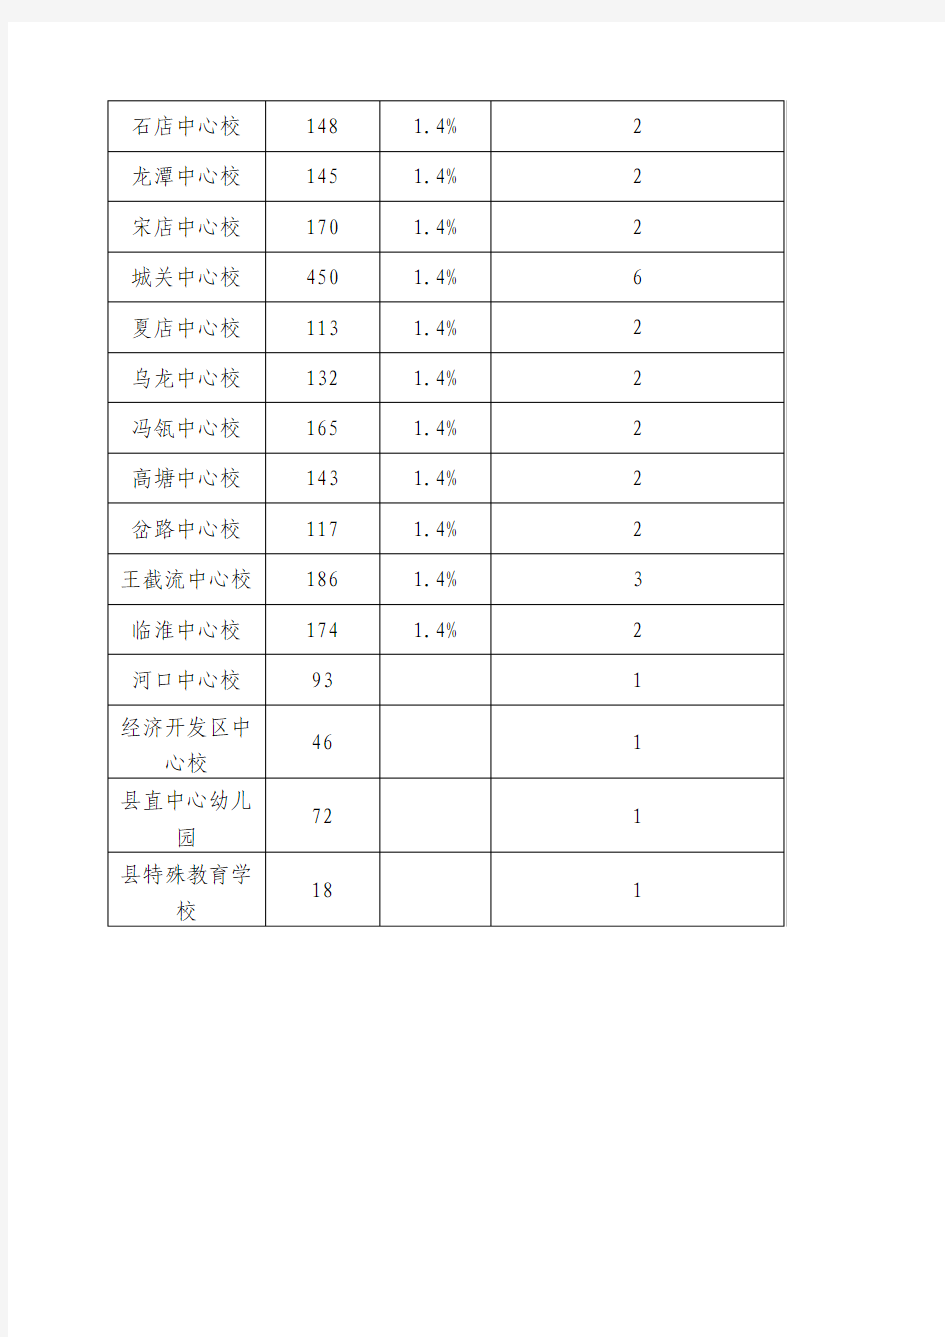 霍邱县2016年度教育系统小学(幼儿园)评审高级教师岗位数额分配表